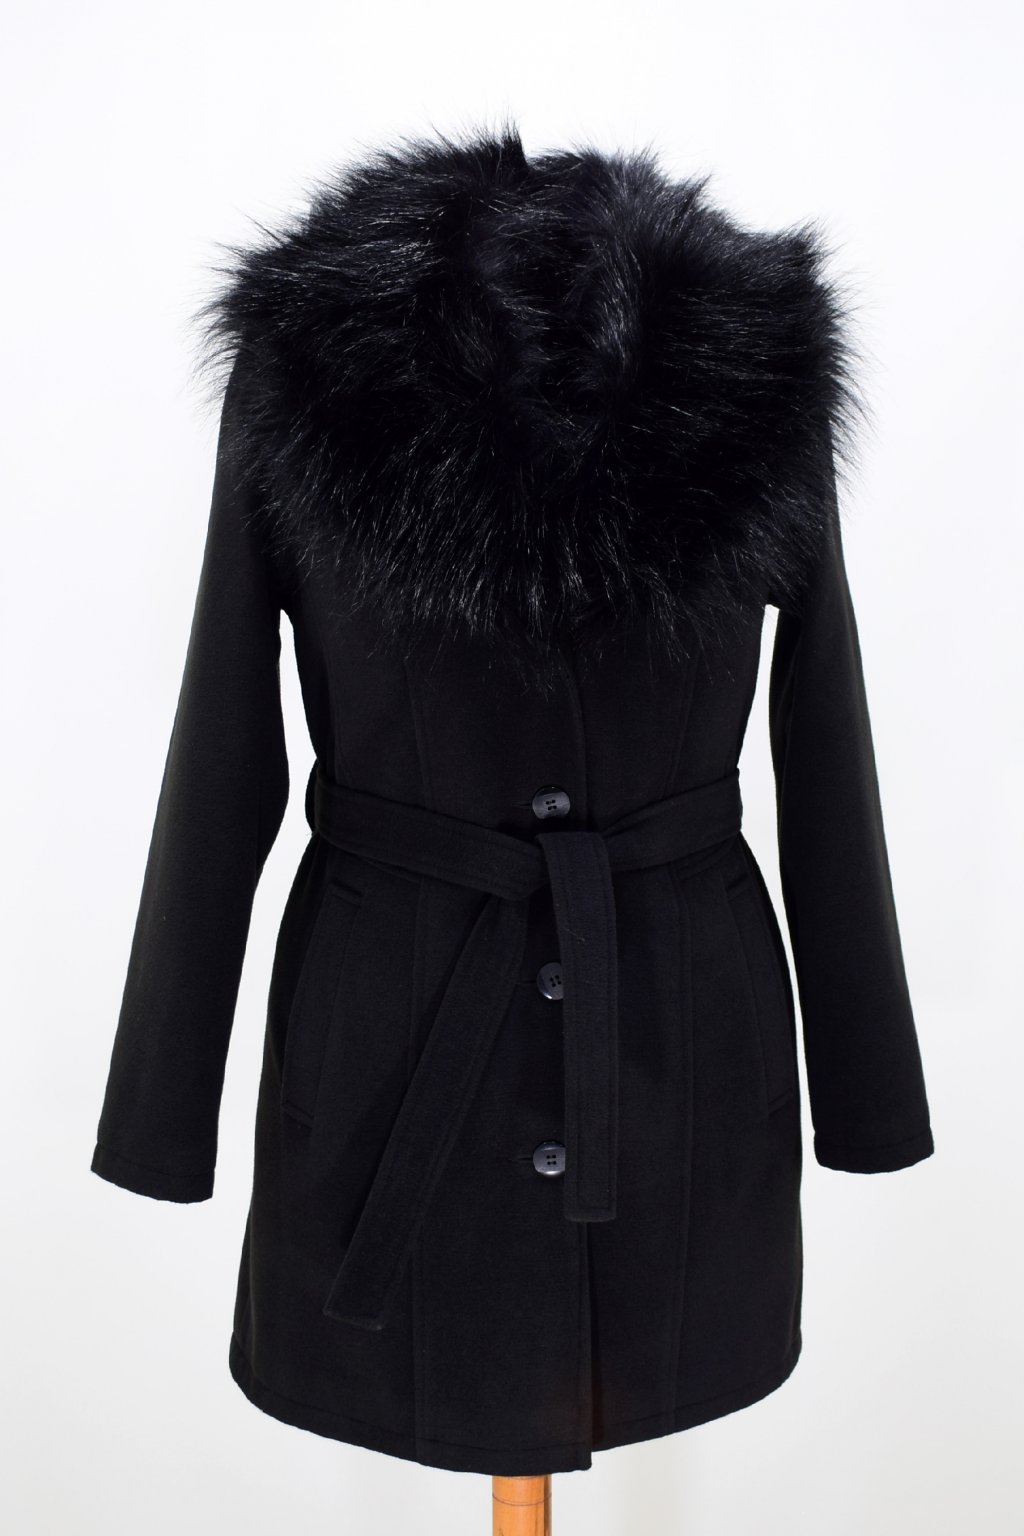 Dámský černý zimní kabát s kožešinou Julie.